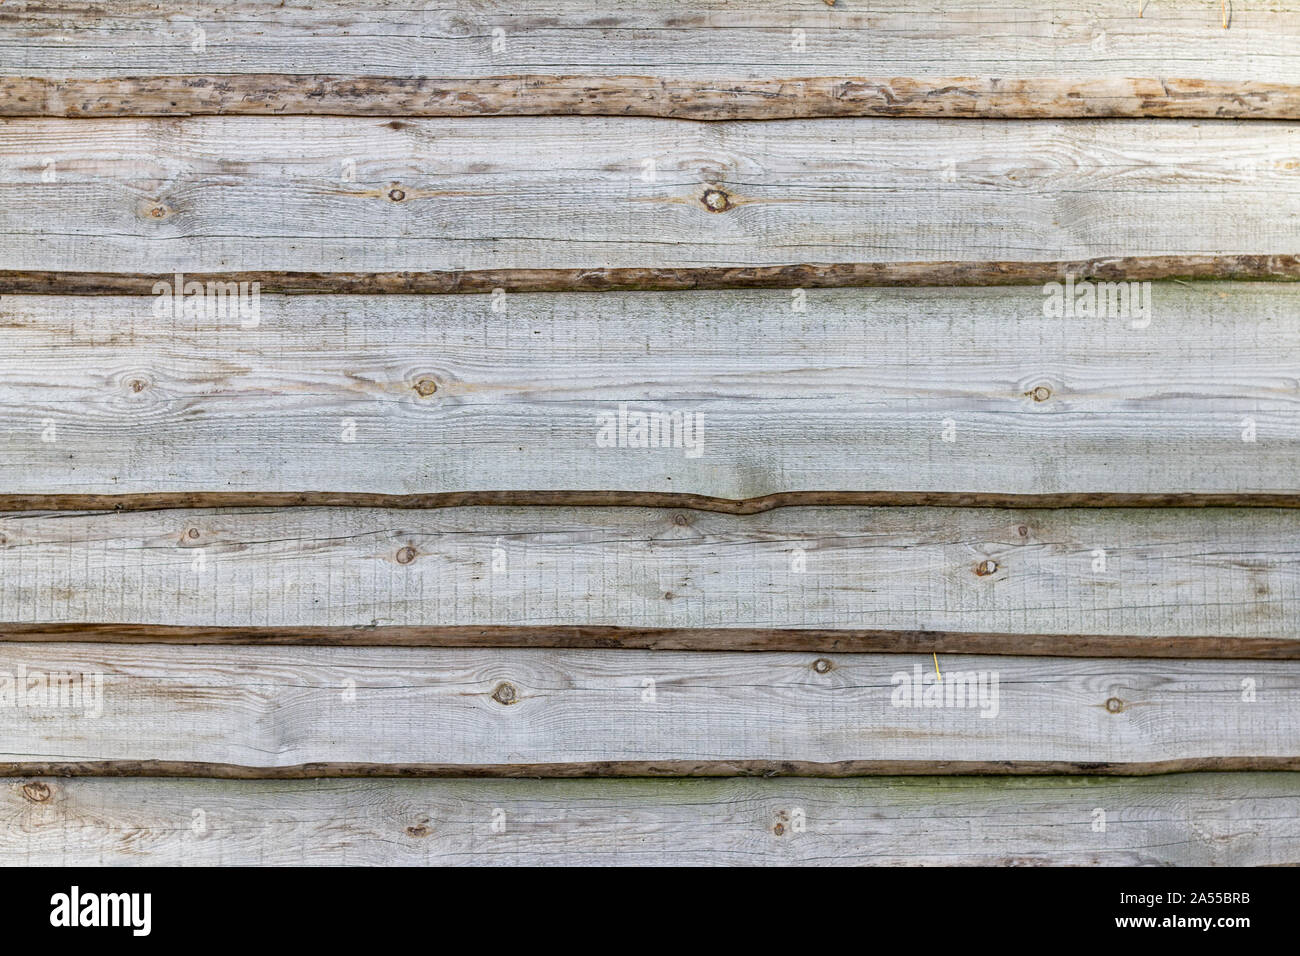 Graue Farbe Holz Bretter Hintergrund. Wand oder Zaun Exterior design.  Natürliche Holz Hintergrund Stockfotografie - Alamy